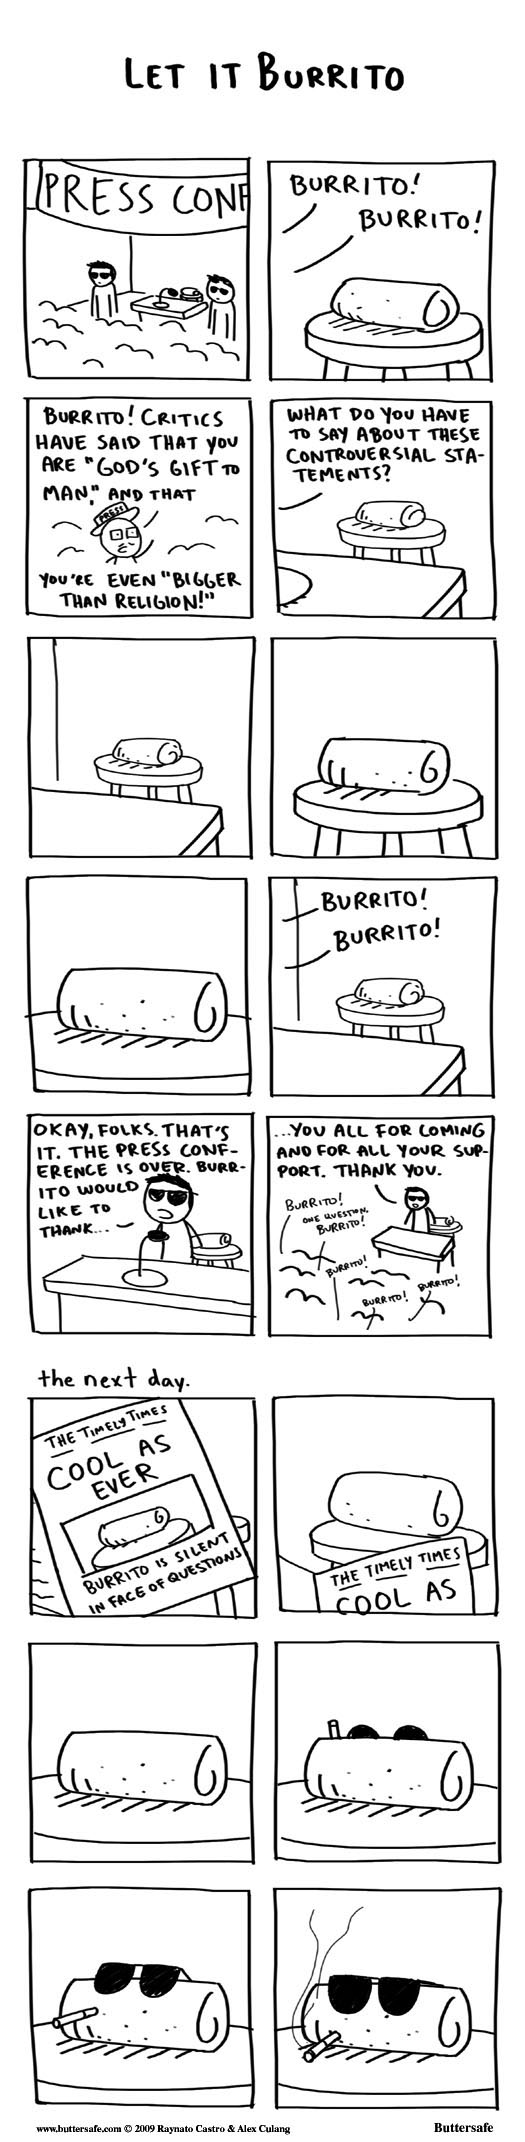 Let It Burrito